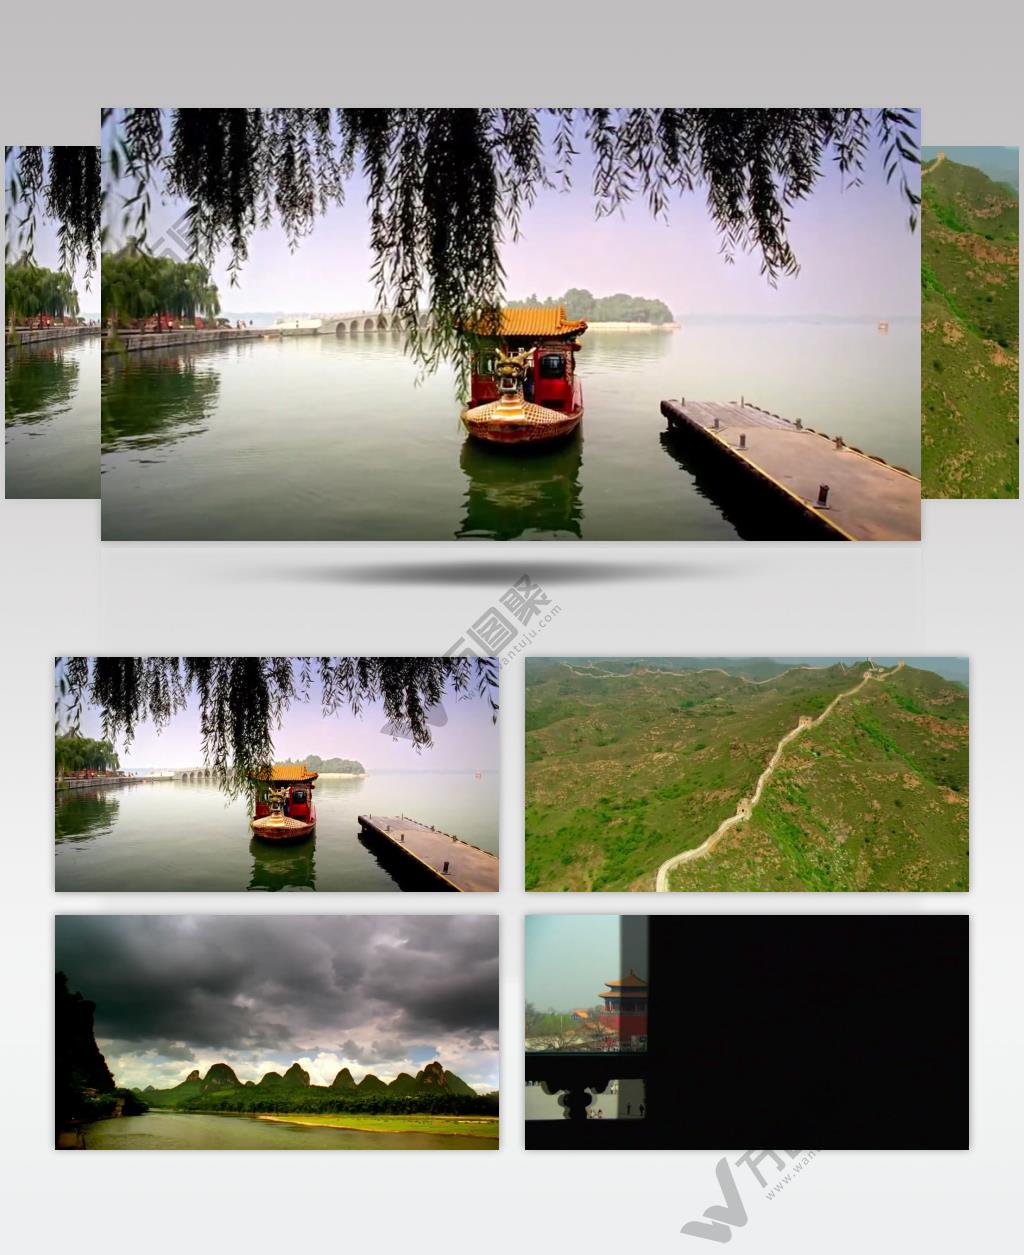 壮丽景观-游览区2中国名胜风景标志性景点高清视频素材